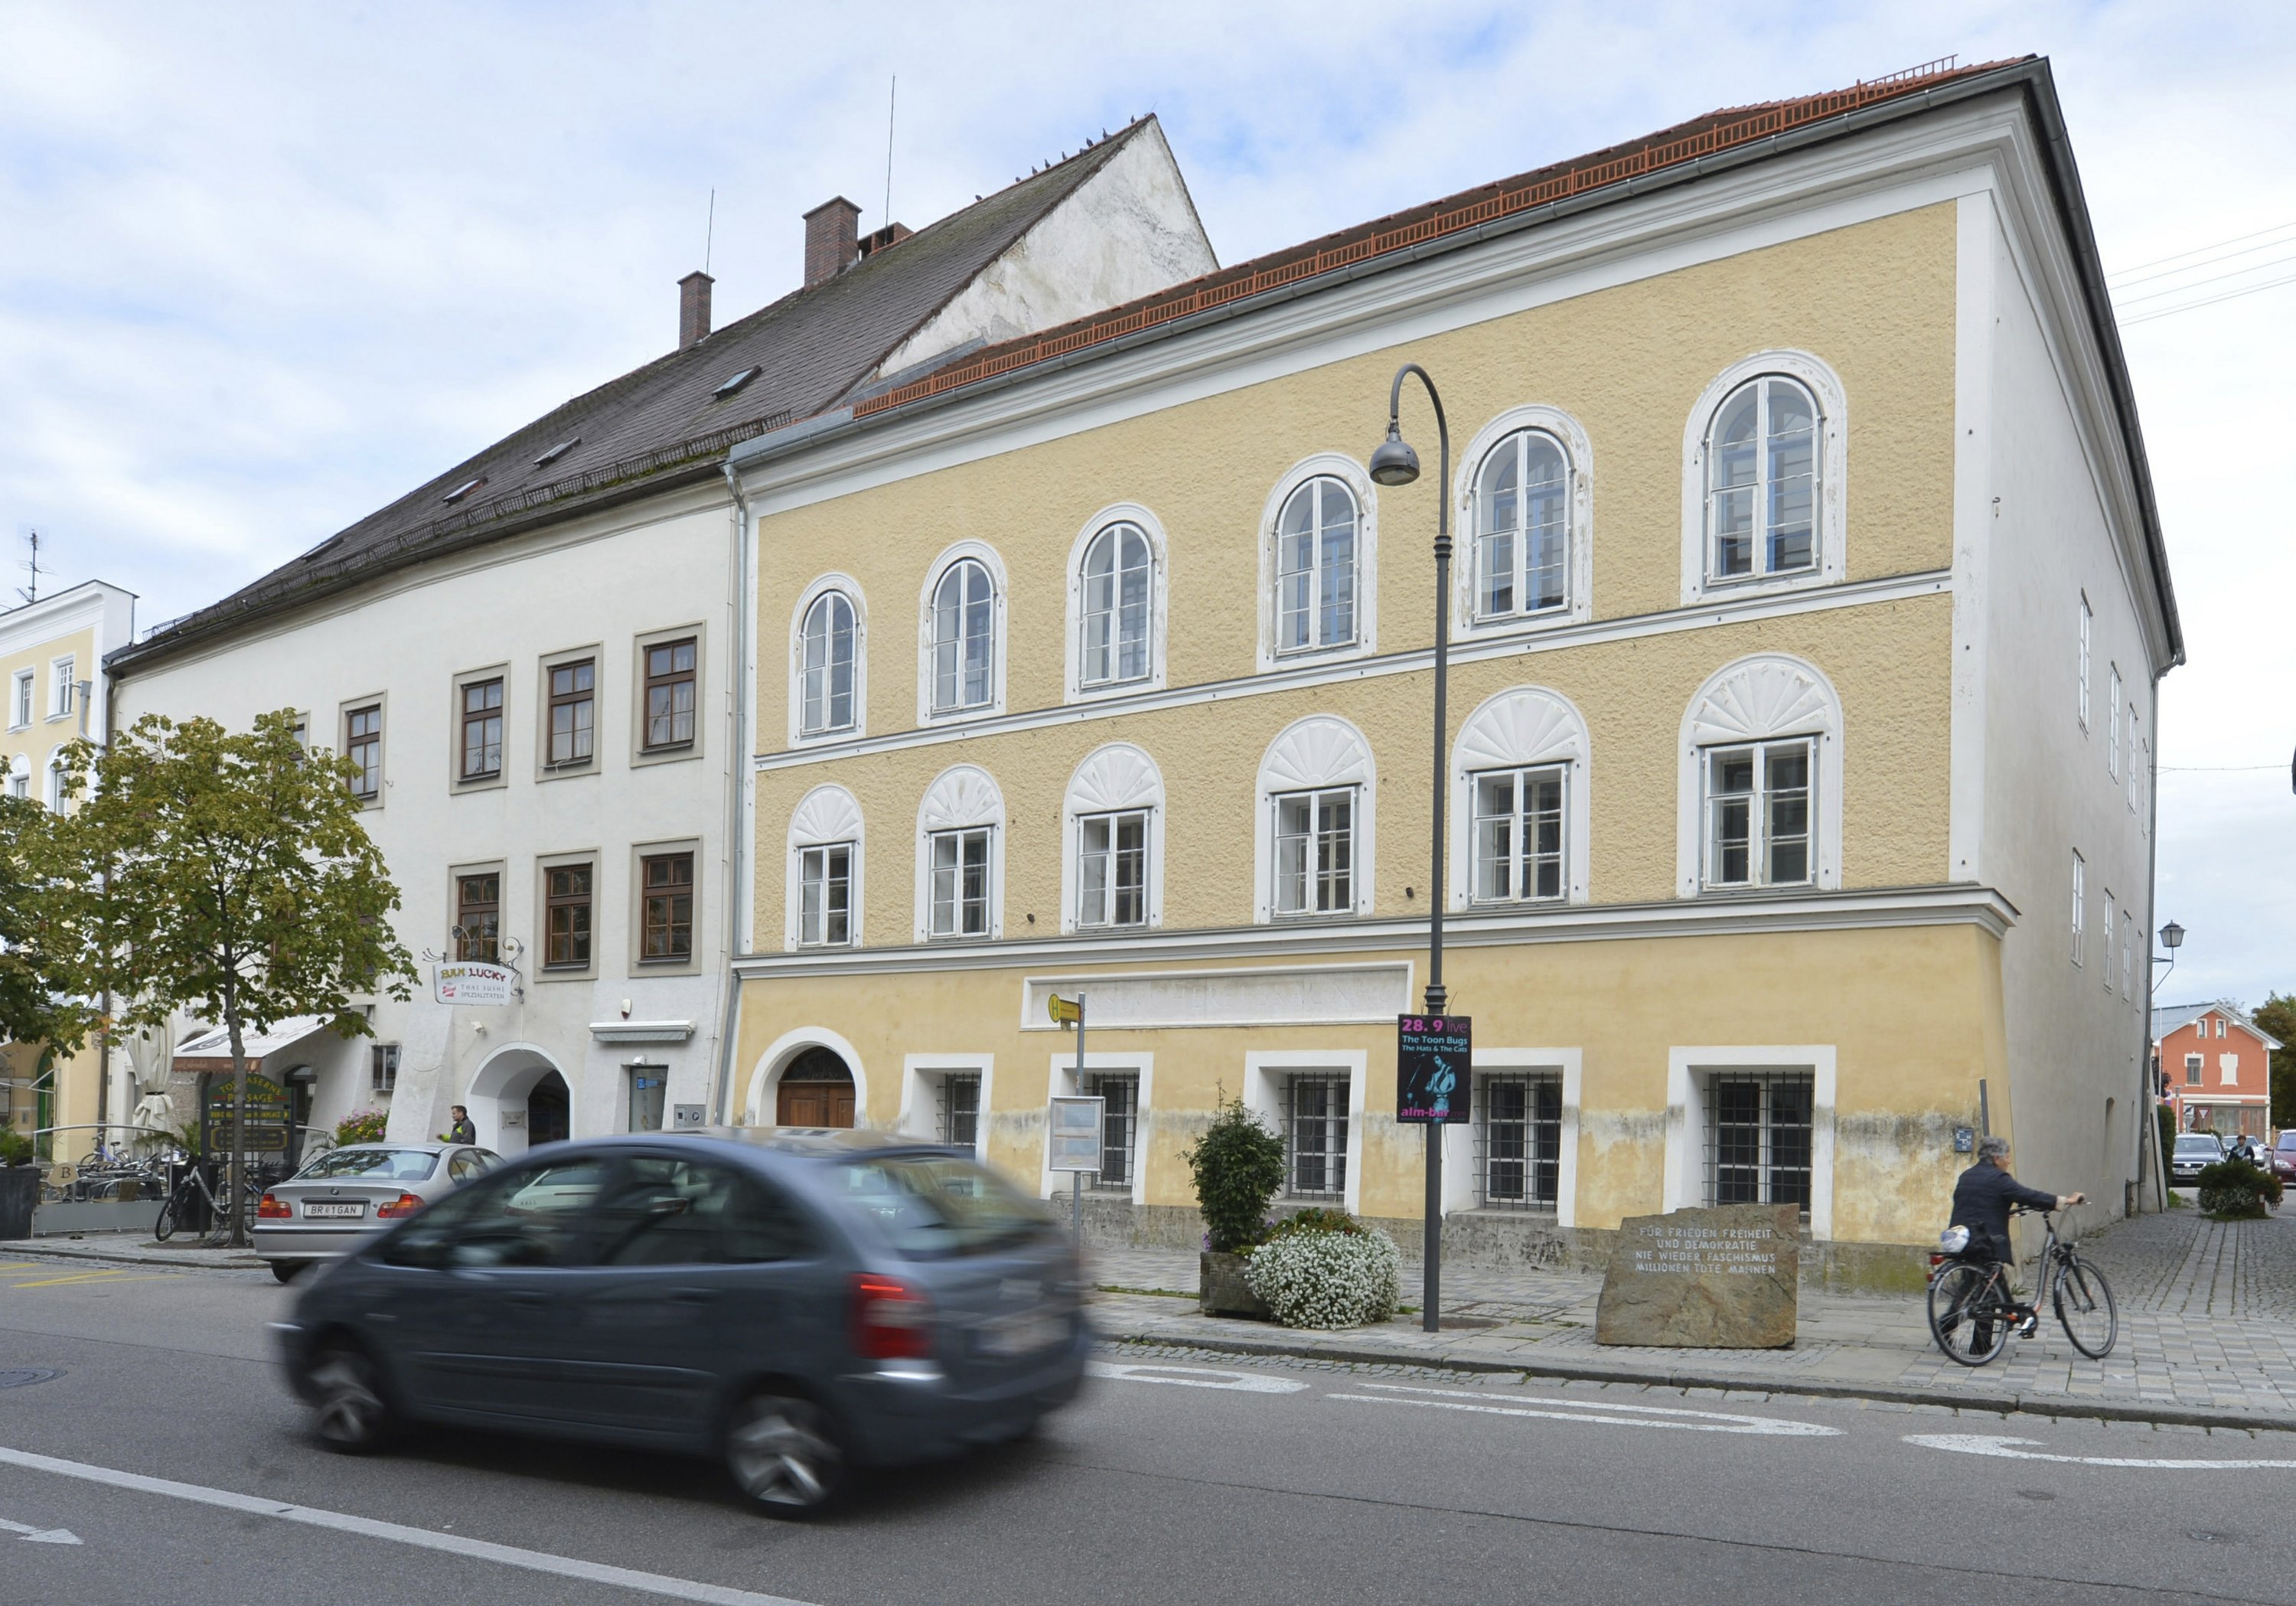 La casa natal de Hitler subió de precio… ahora cuesta una millonada tras polémica reconversión